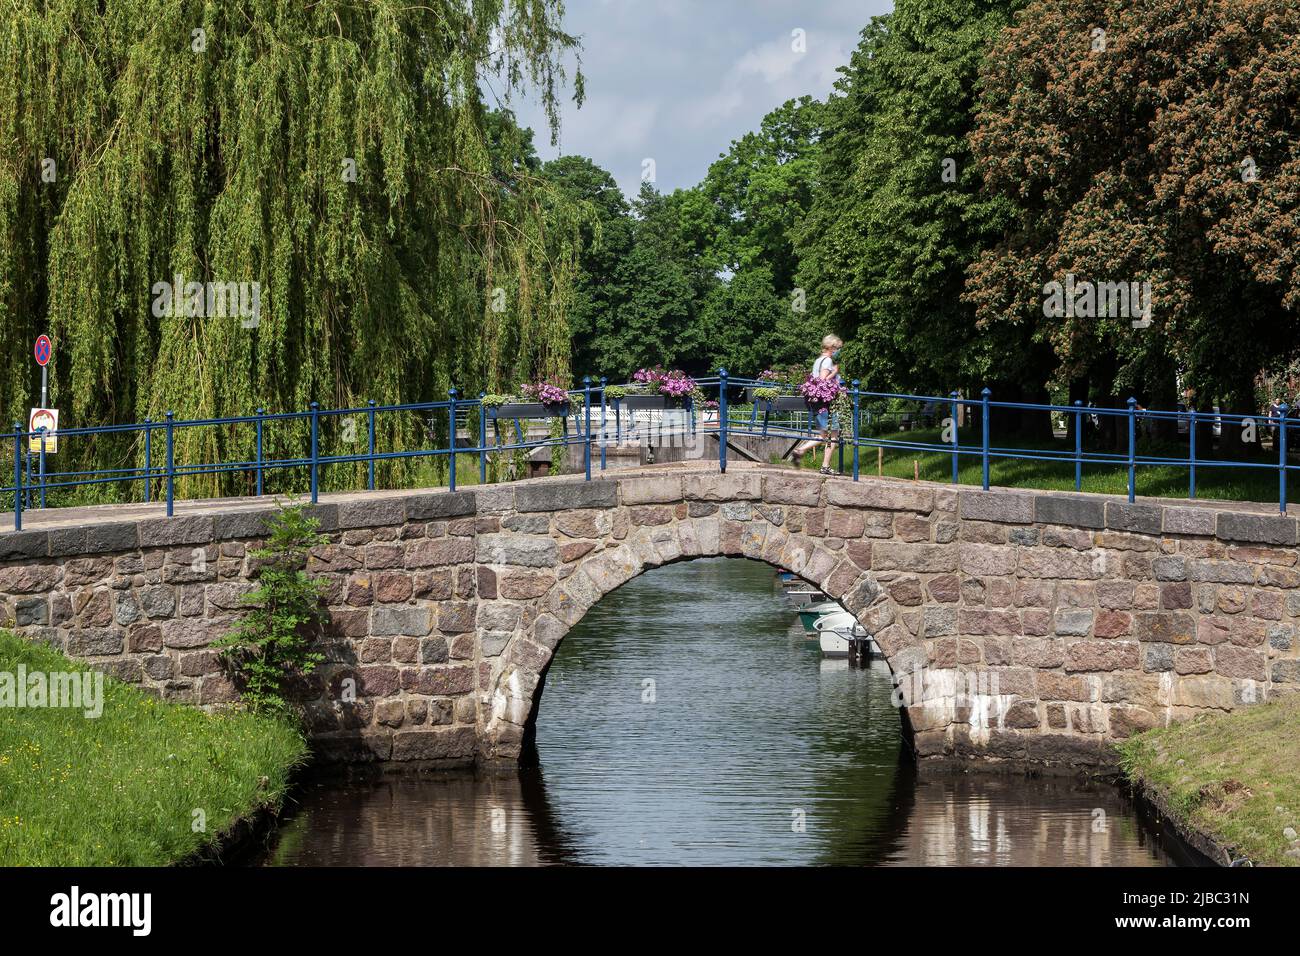 Bridge over the central canal Mittelburggraben . Friedrichstadt, North Frisia, Schleswig-Holstein, Germany Stock Photo